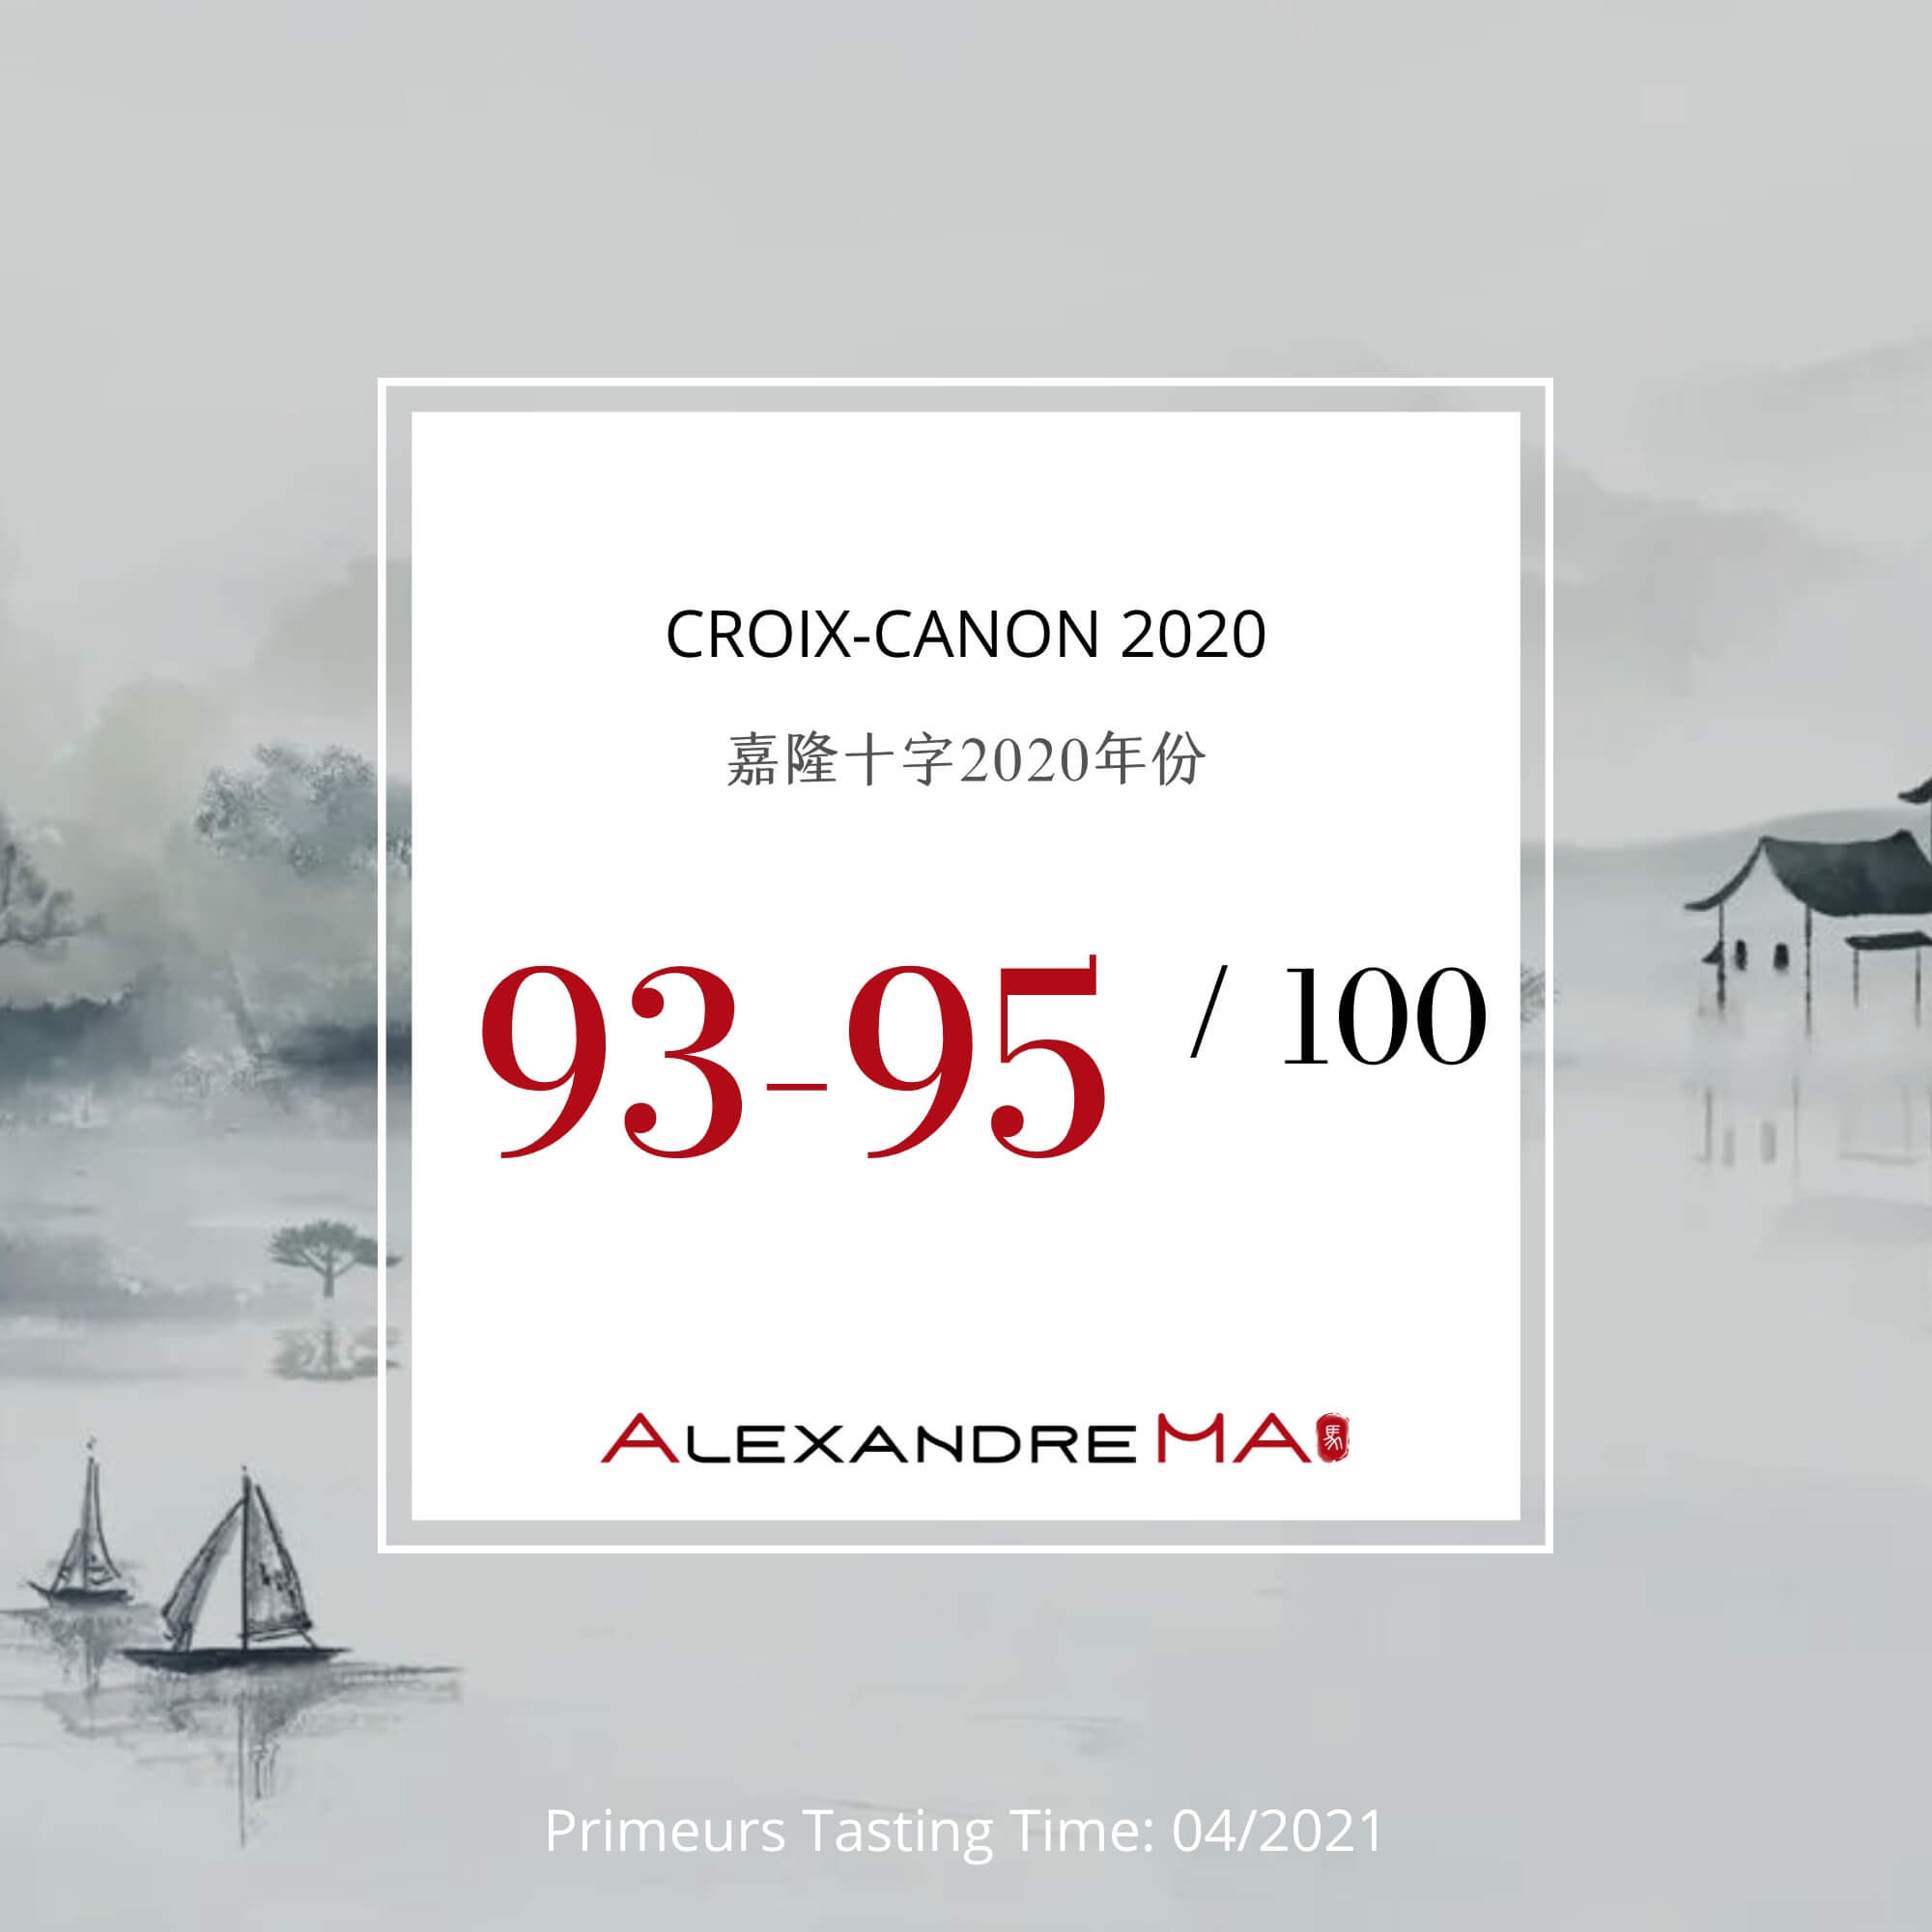 Croix-Canon 2020 - Alexandre MA